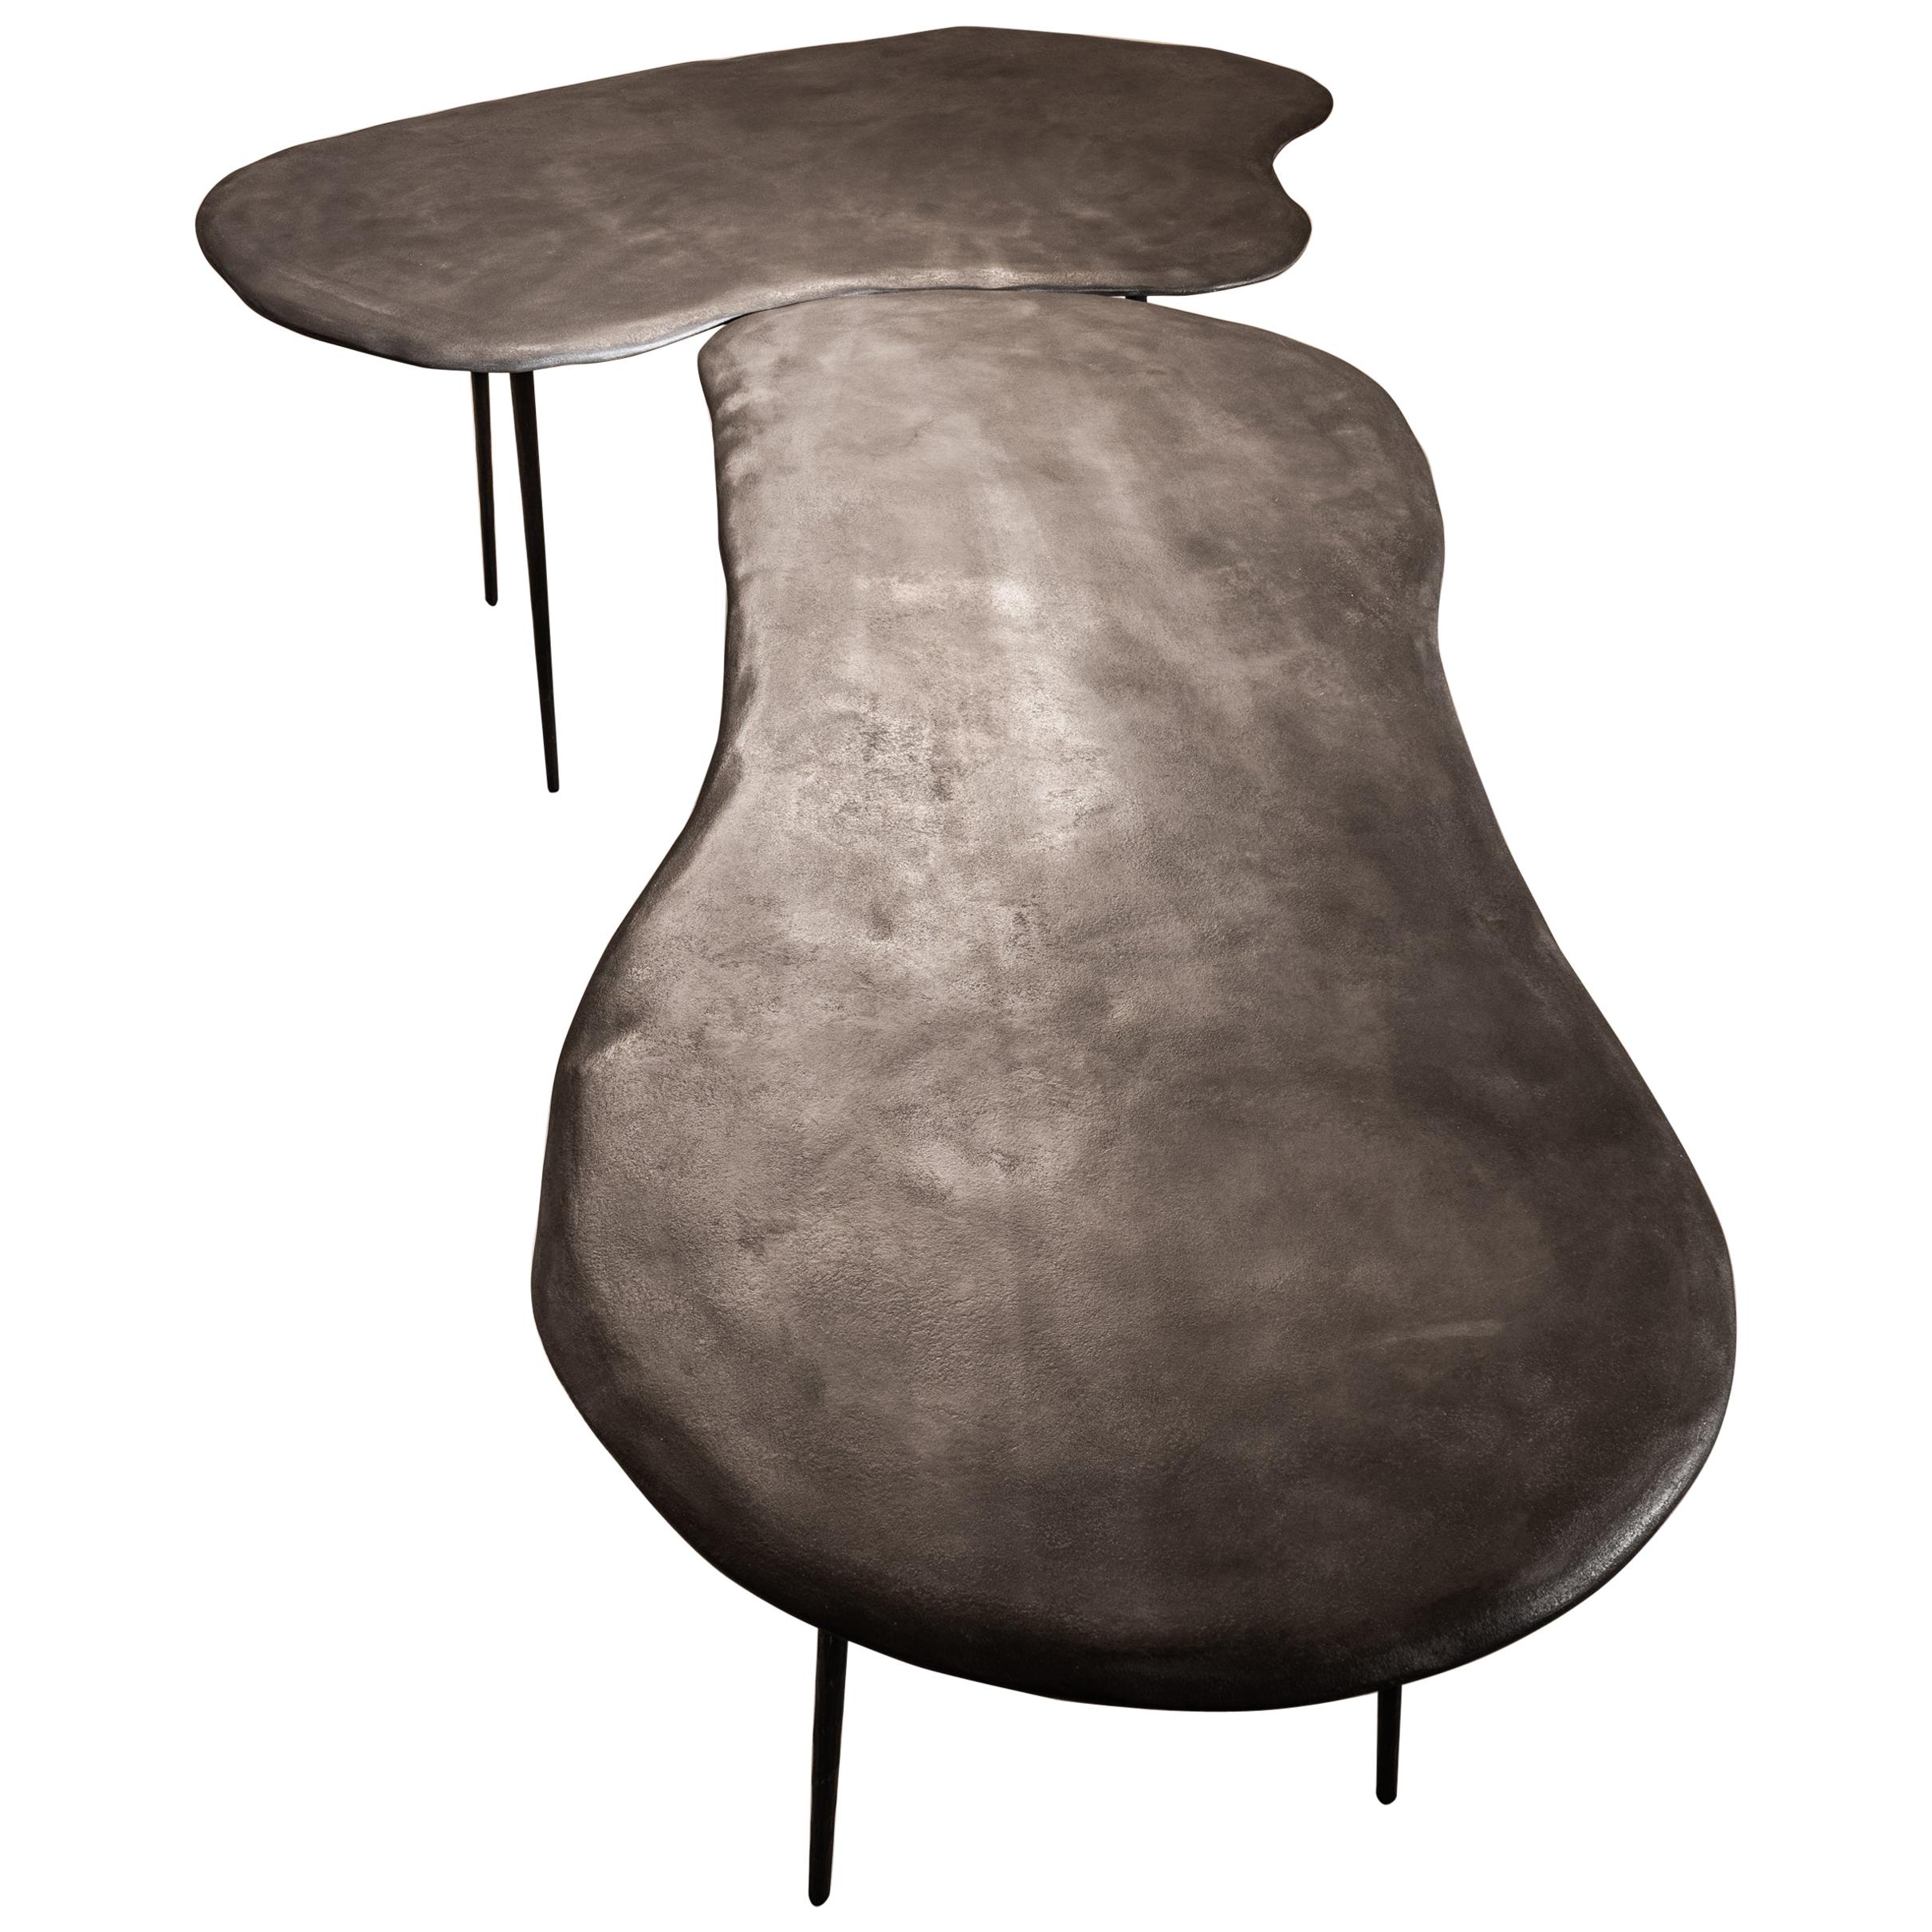 Varenna Table Duo by Studio Emblématique